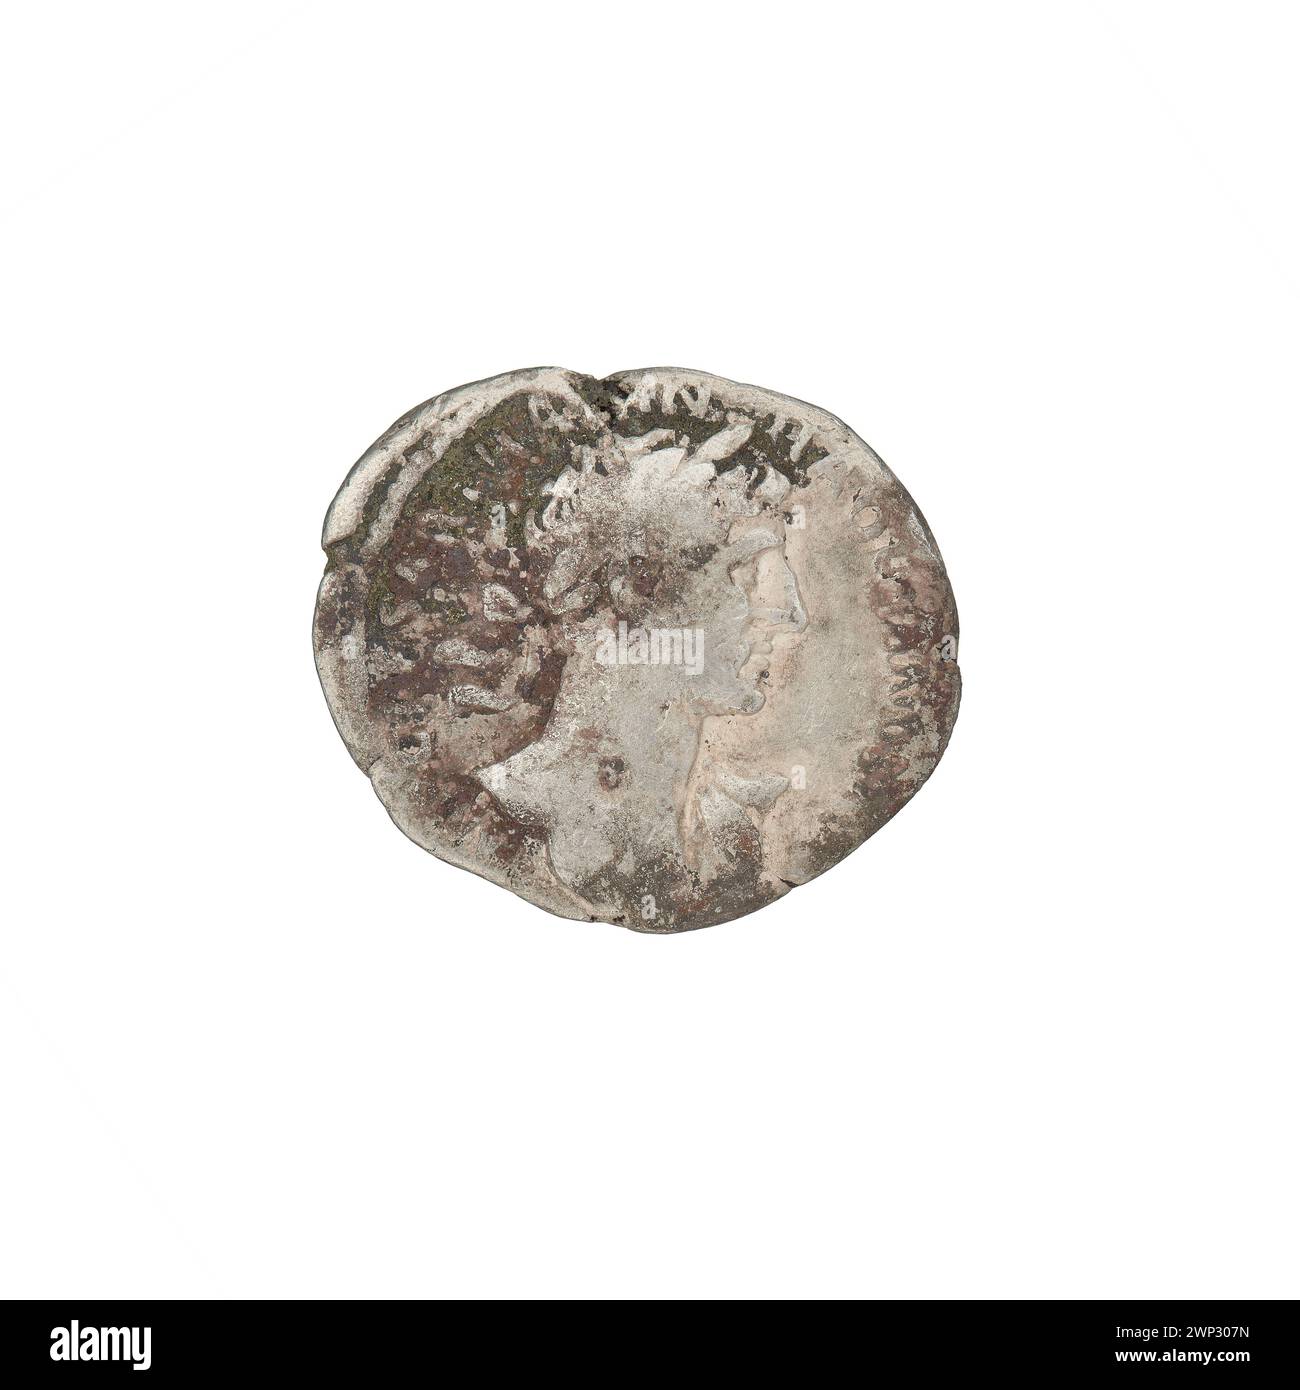 denarius; Hadrian (76-138; Roman emperor 117-138); 118 (118-00-00-118-00-00);PAX (personification), branches, busts, laurel wreaths Stock Photo